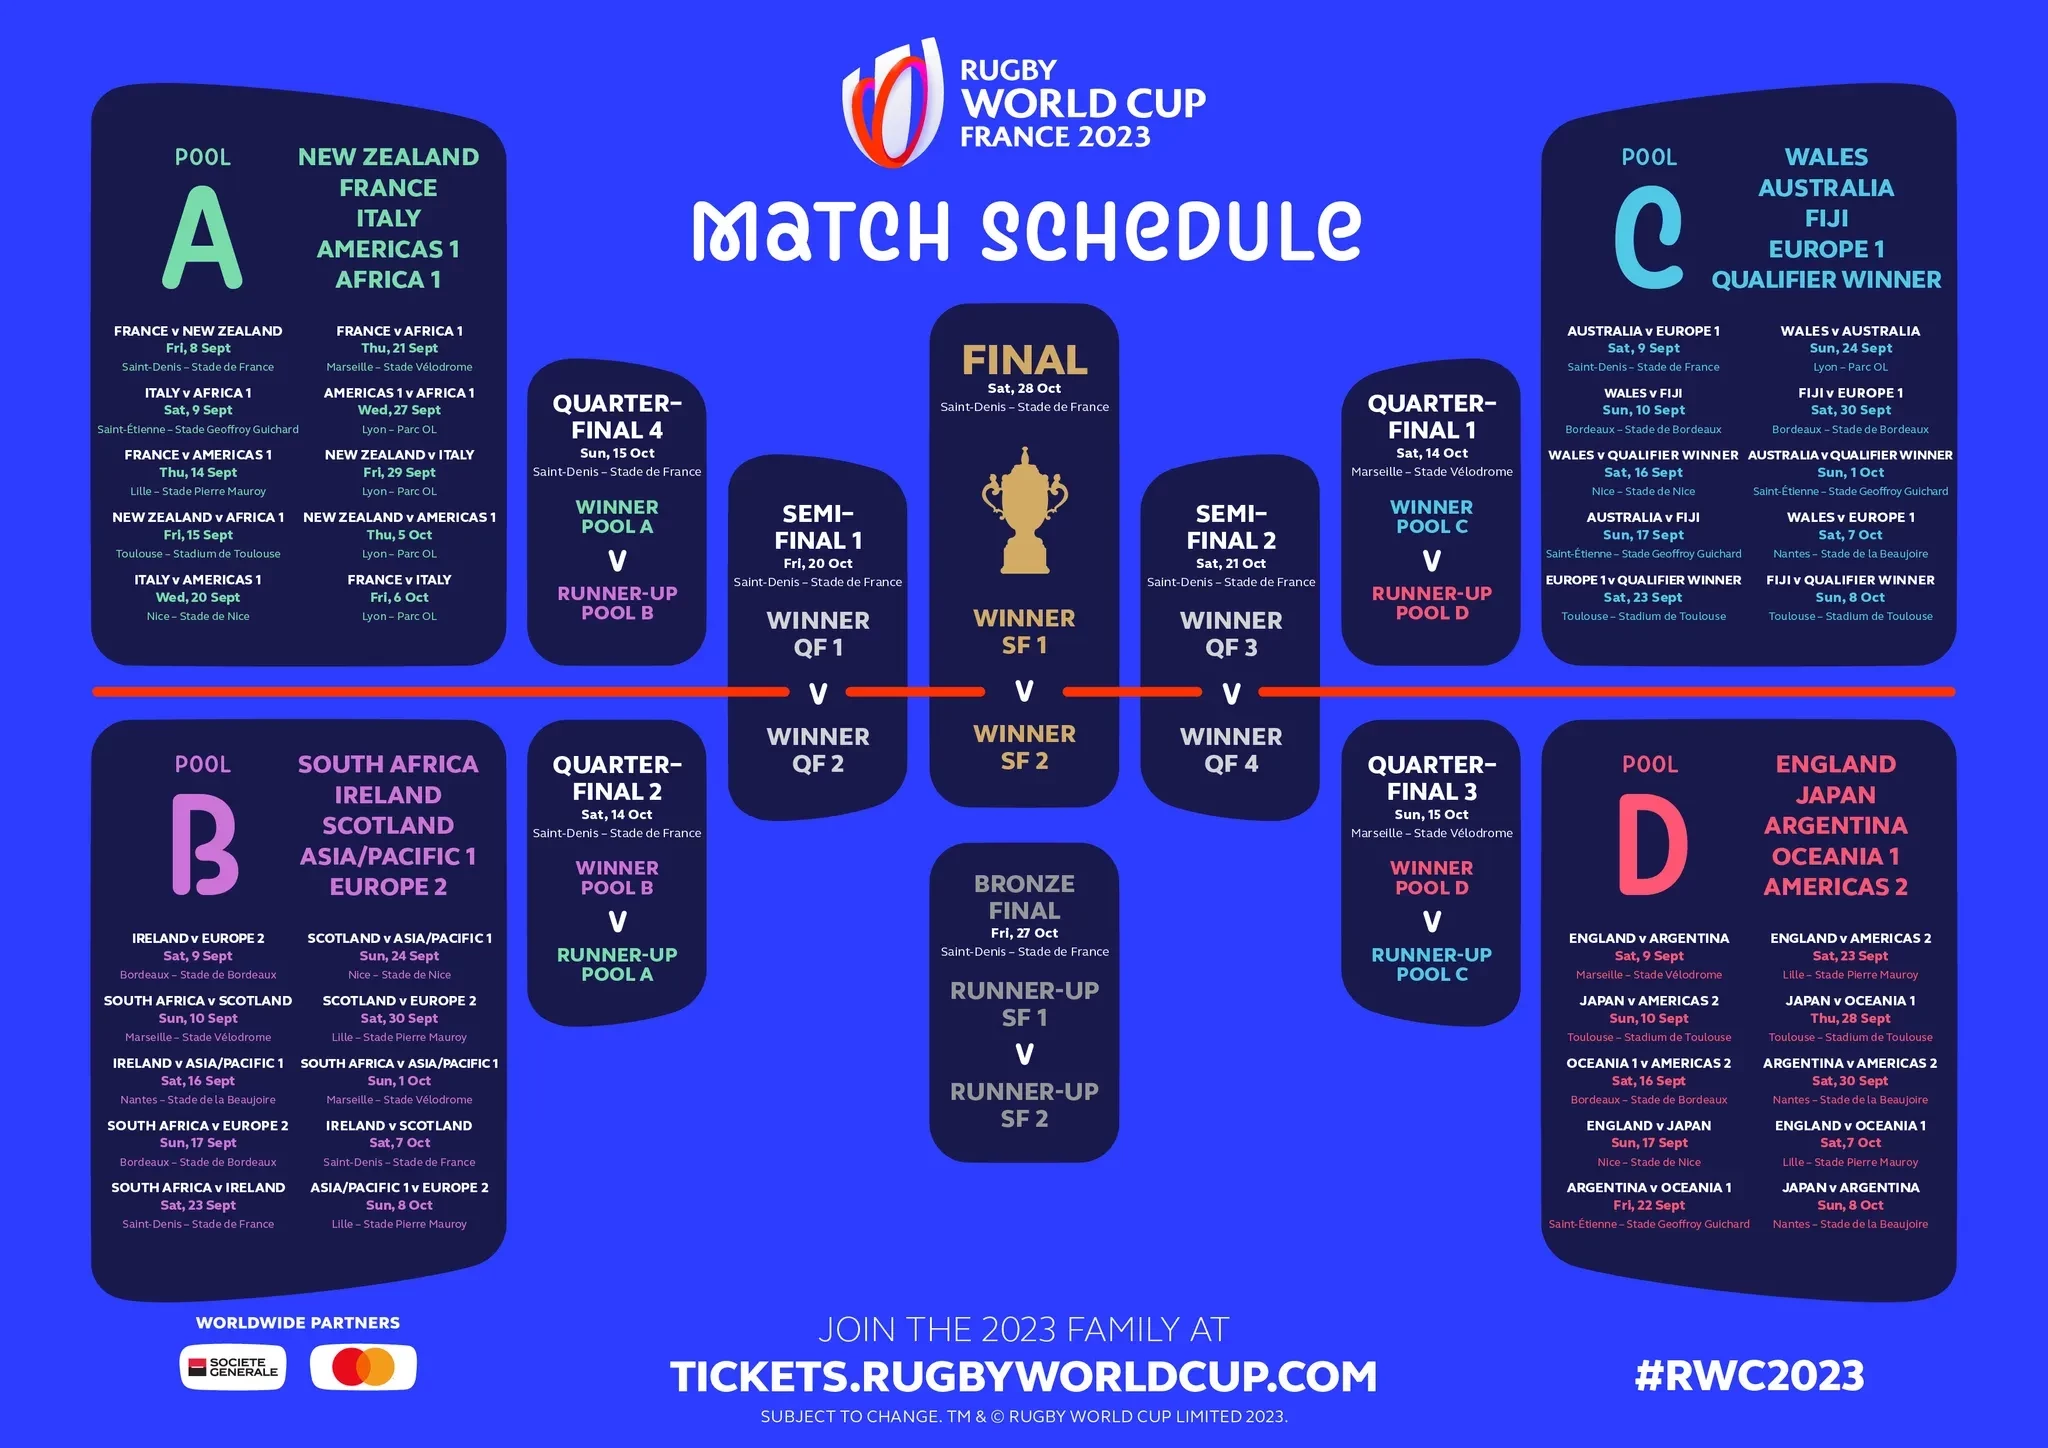 Le calendrier de la Coupe du Monde de Rugby 2023 en France a été publié © World Rugby